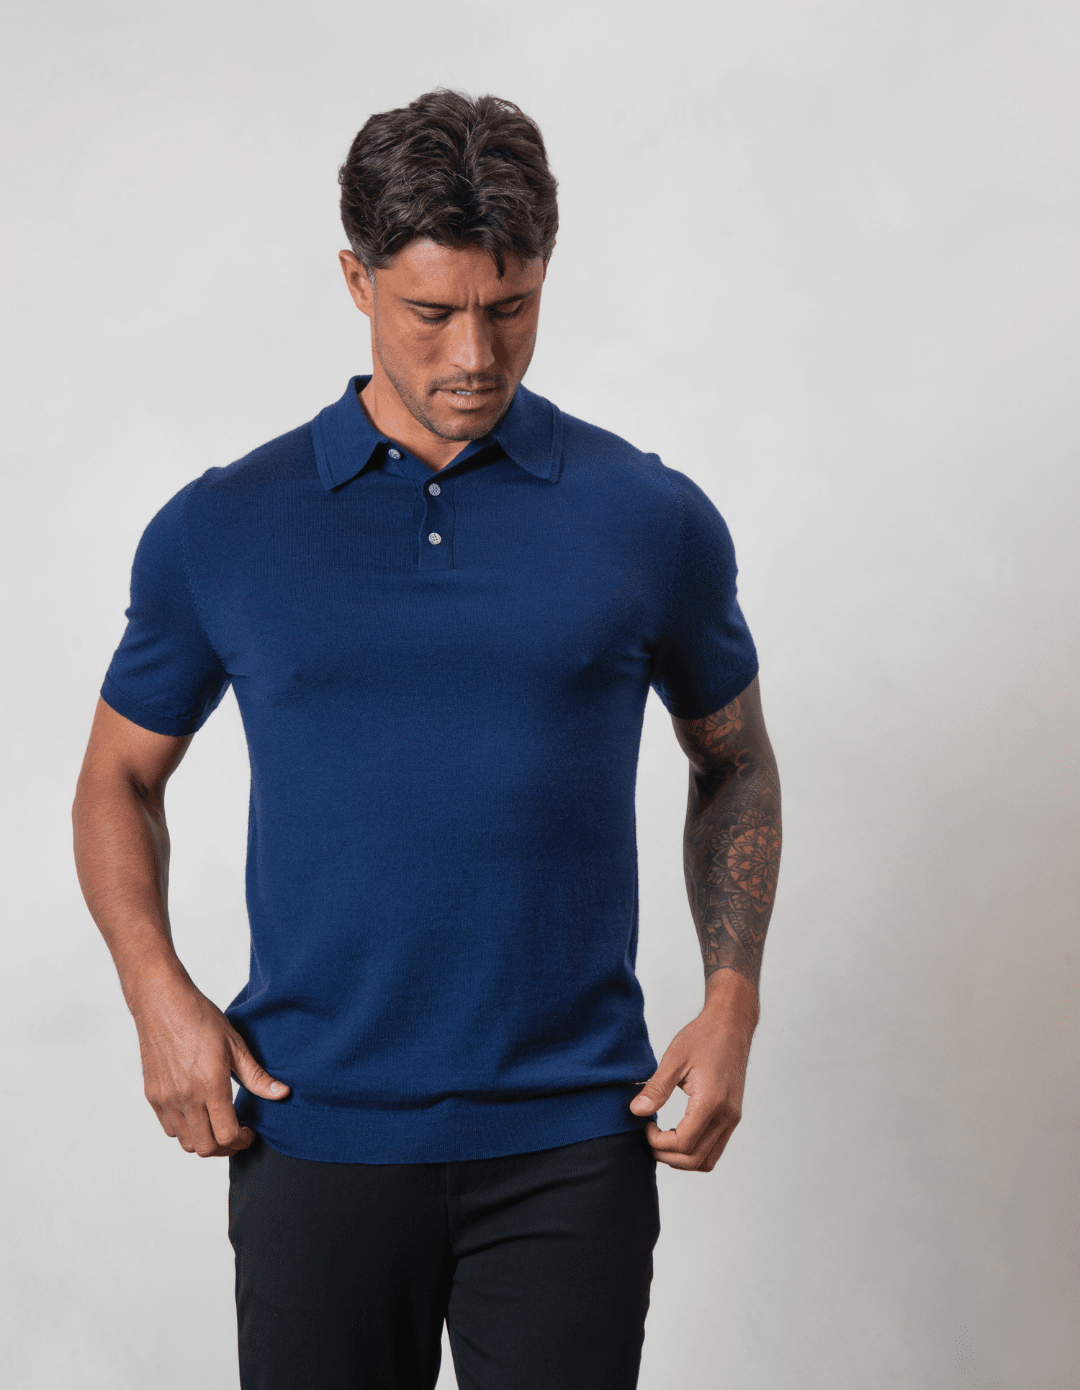 Men's Button Merino Polo | Navy Merino Wool Polo for Men | Express ...